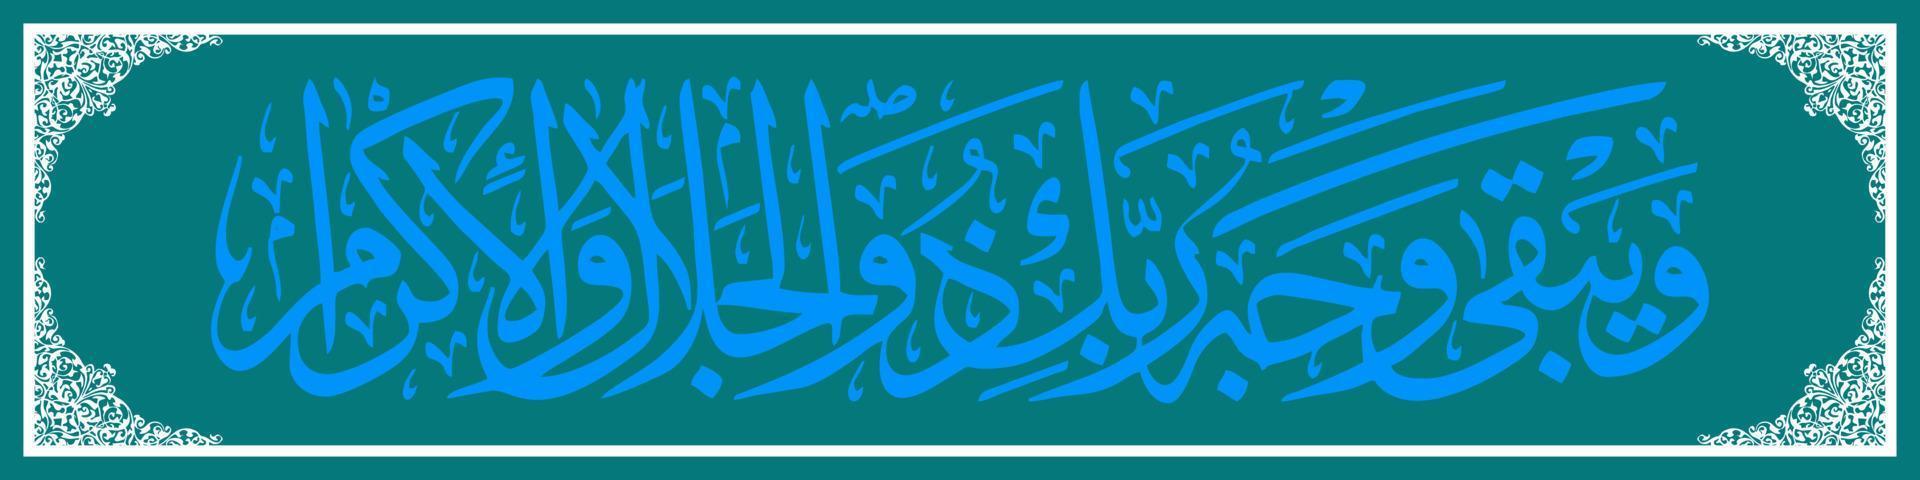 Arabische Kalligraphie al quran surah ar rahman 27, Übersetzung und ewig ist die Essenz deines Herrn, der Größe und Herrlichkeit hat. vektor